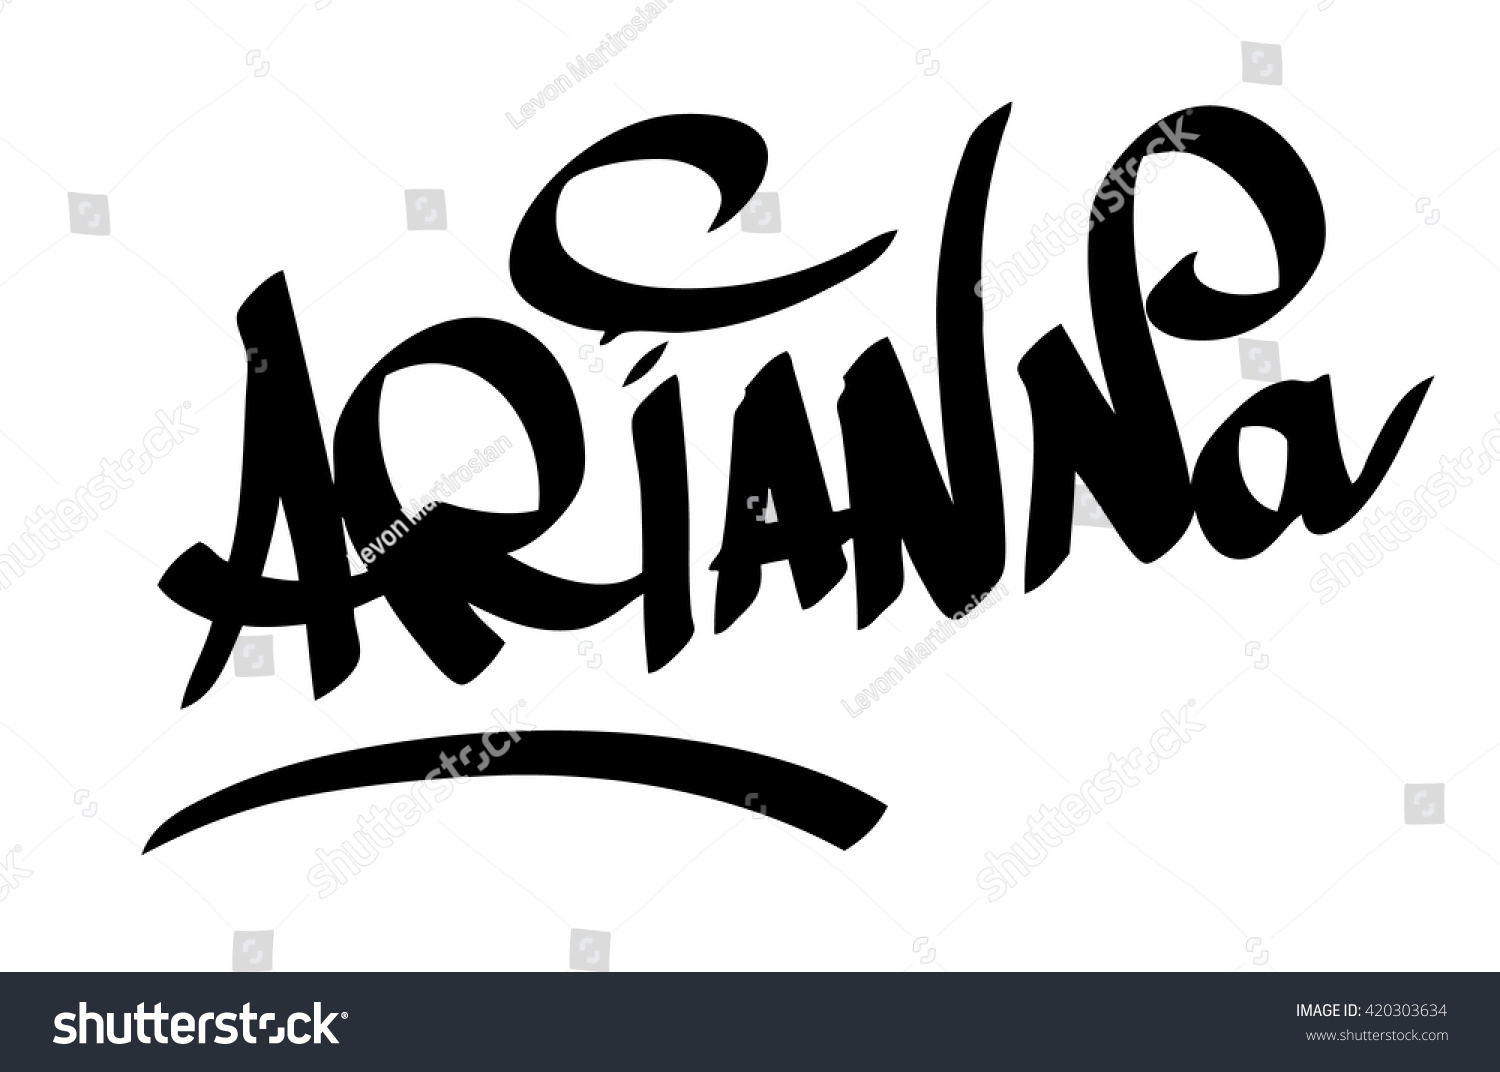 Arianna Female Name Street Art Design Stock Vector 420303634 ...